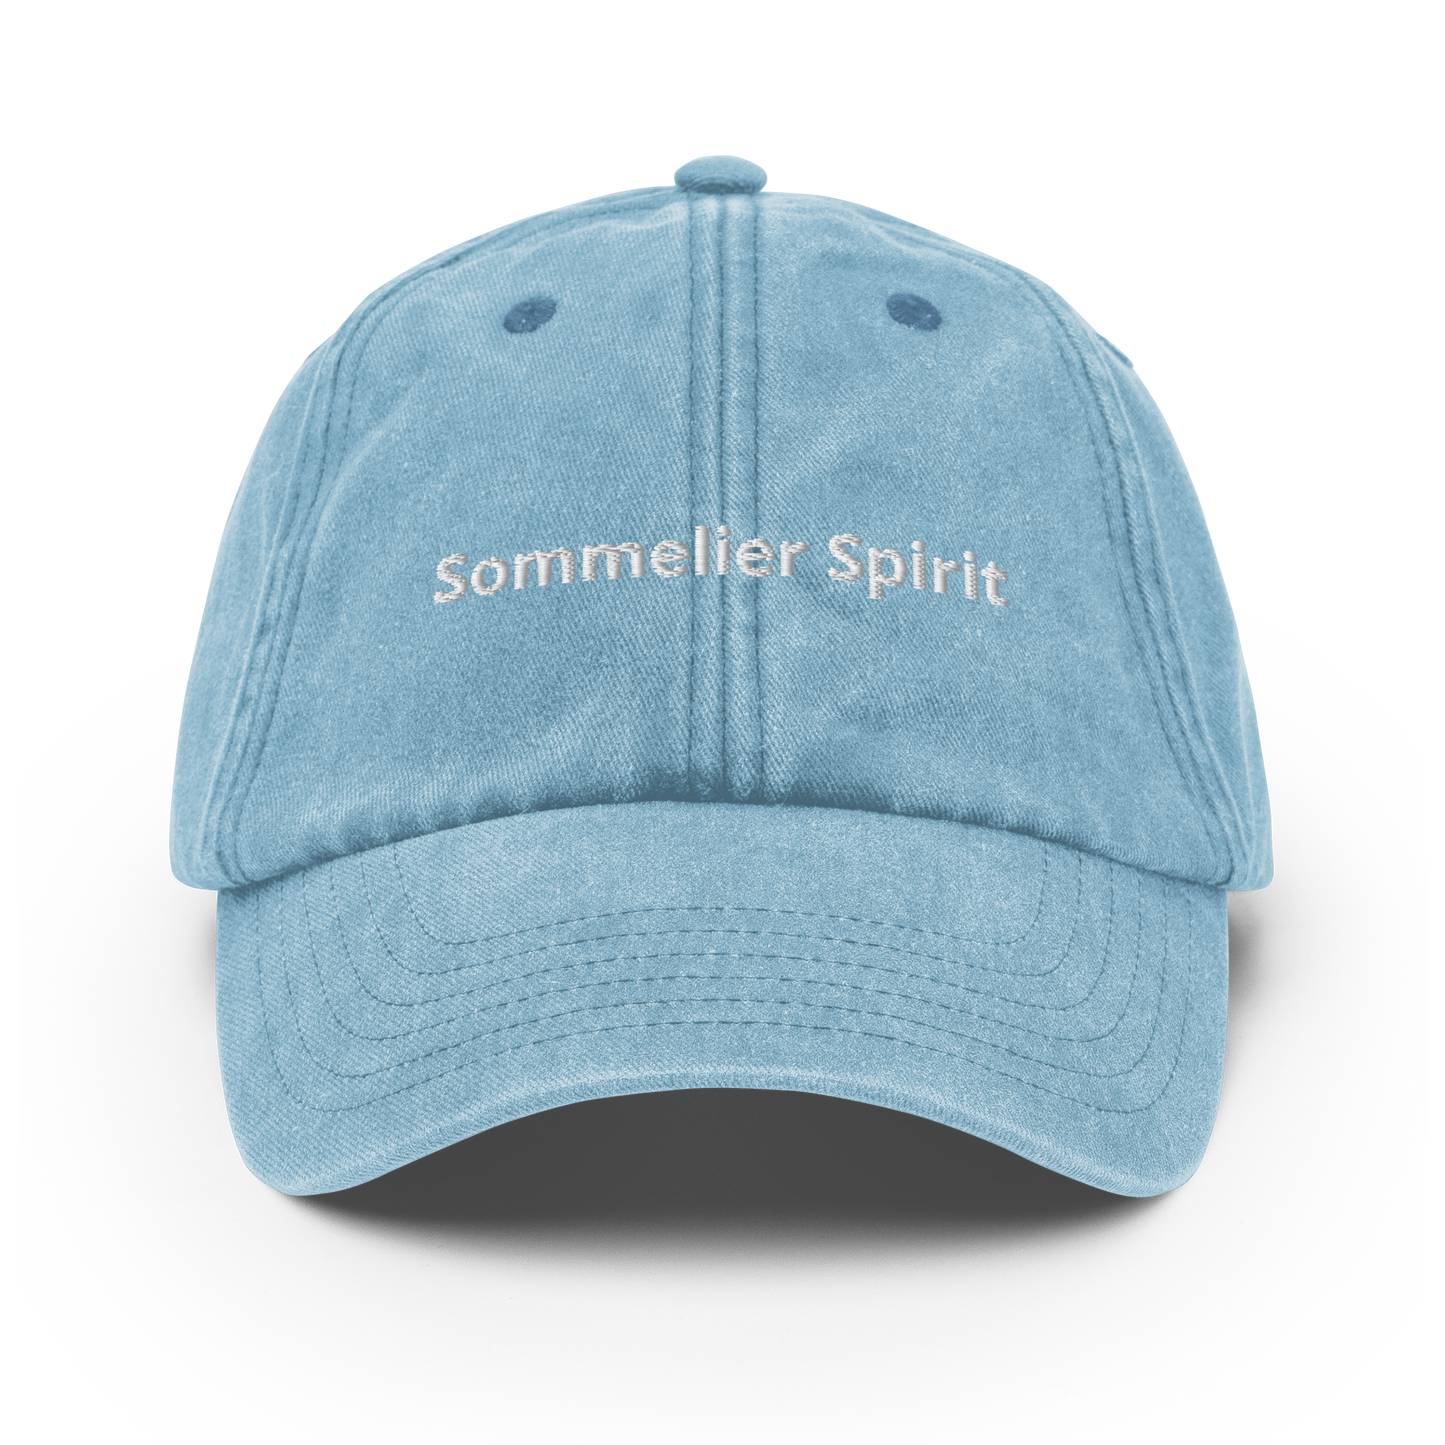 Sommelier Spirit - Vintage Hat